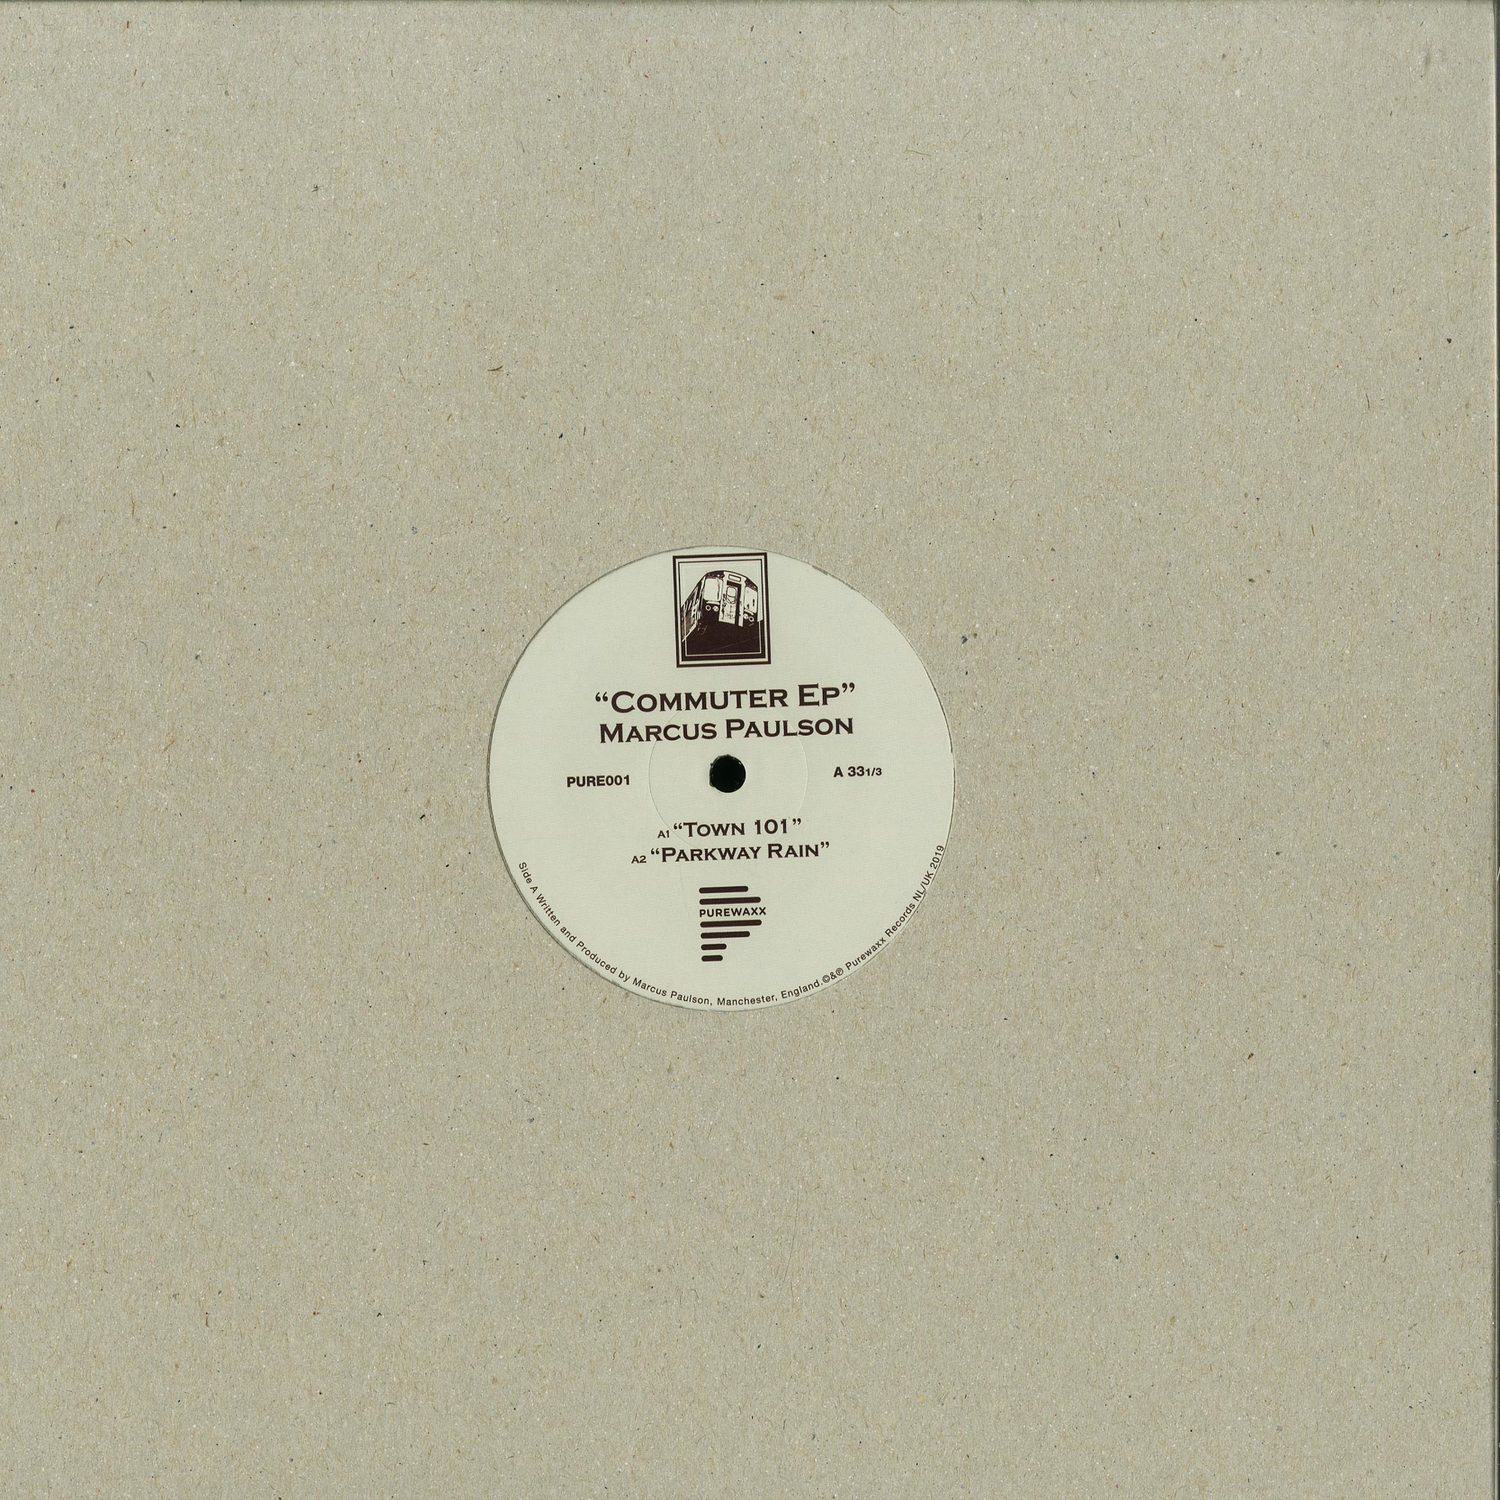 Marcus Paulson & Bohm - COMMUTER EP